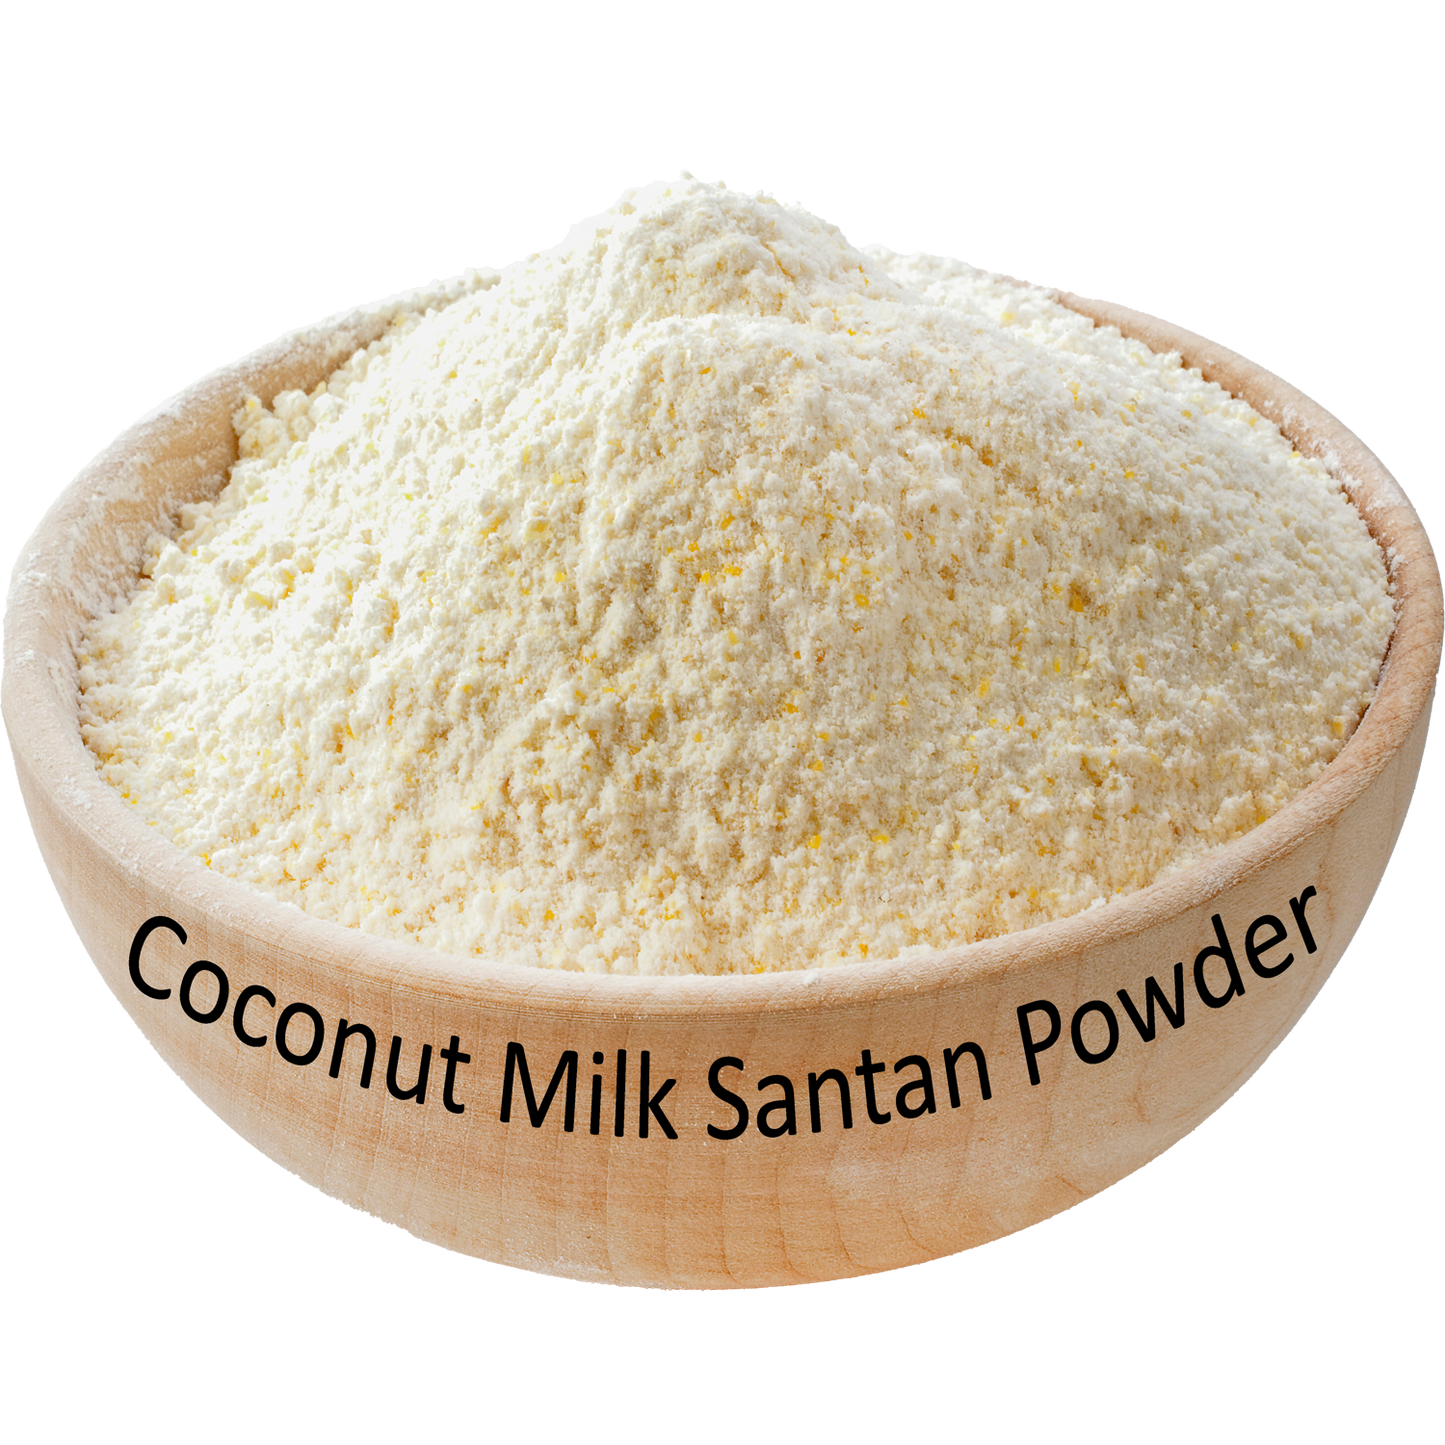 Coconut Milk Santan Powder